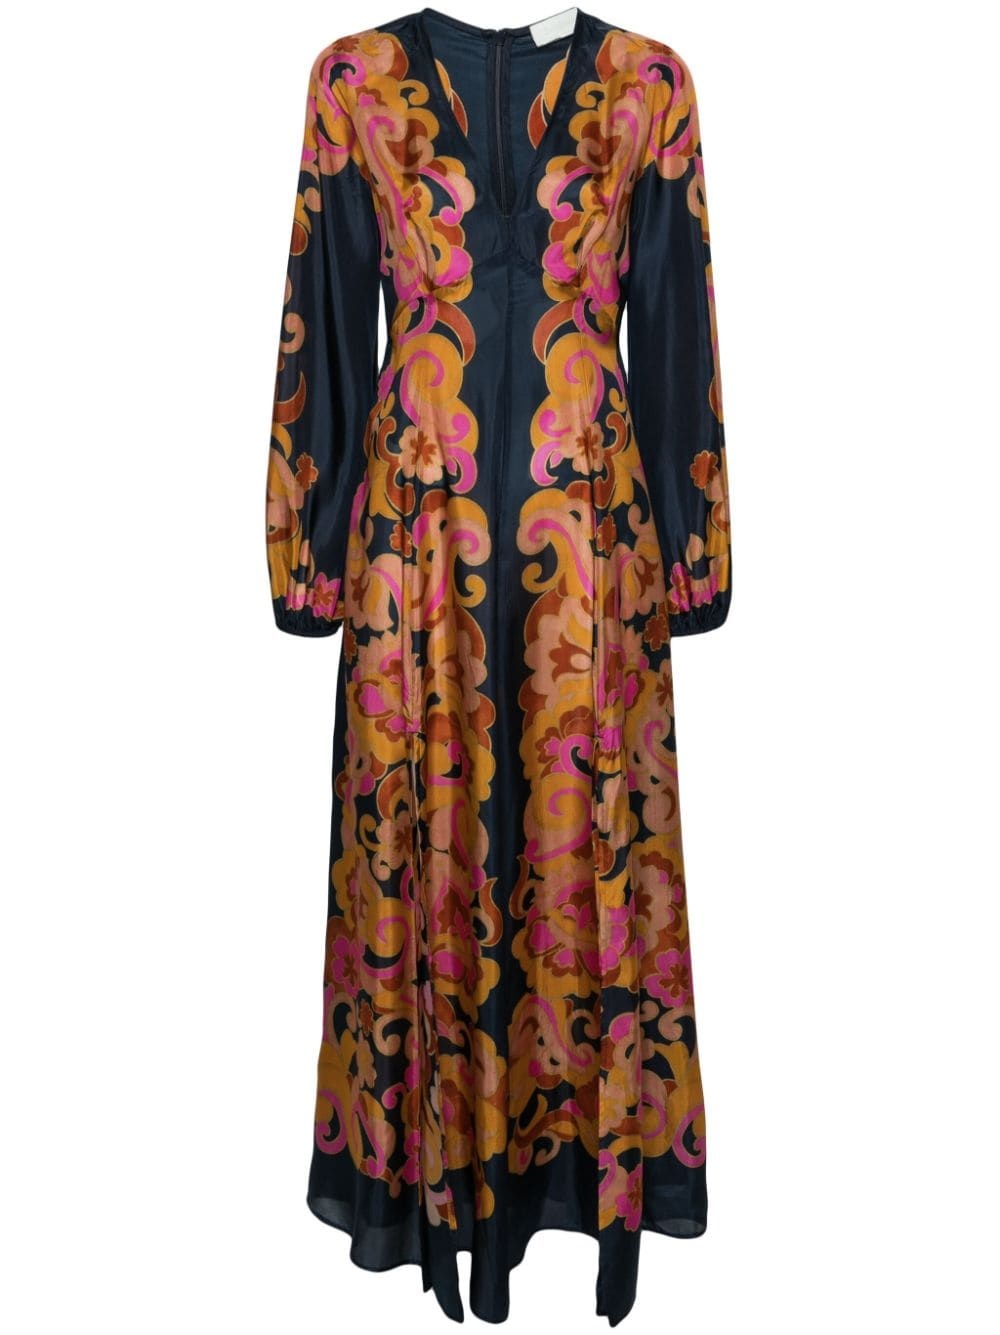 Acadian silk maxi dress - 1